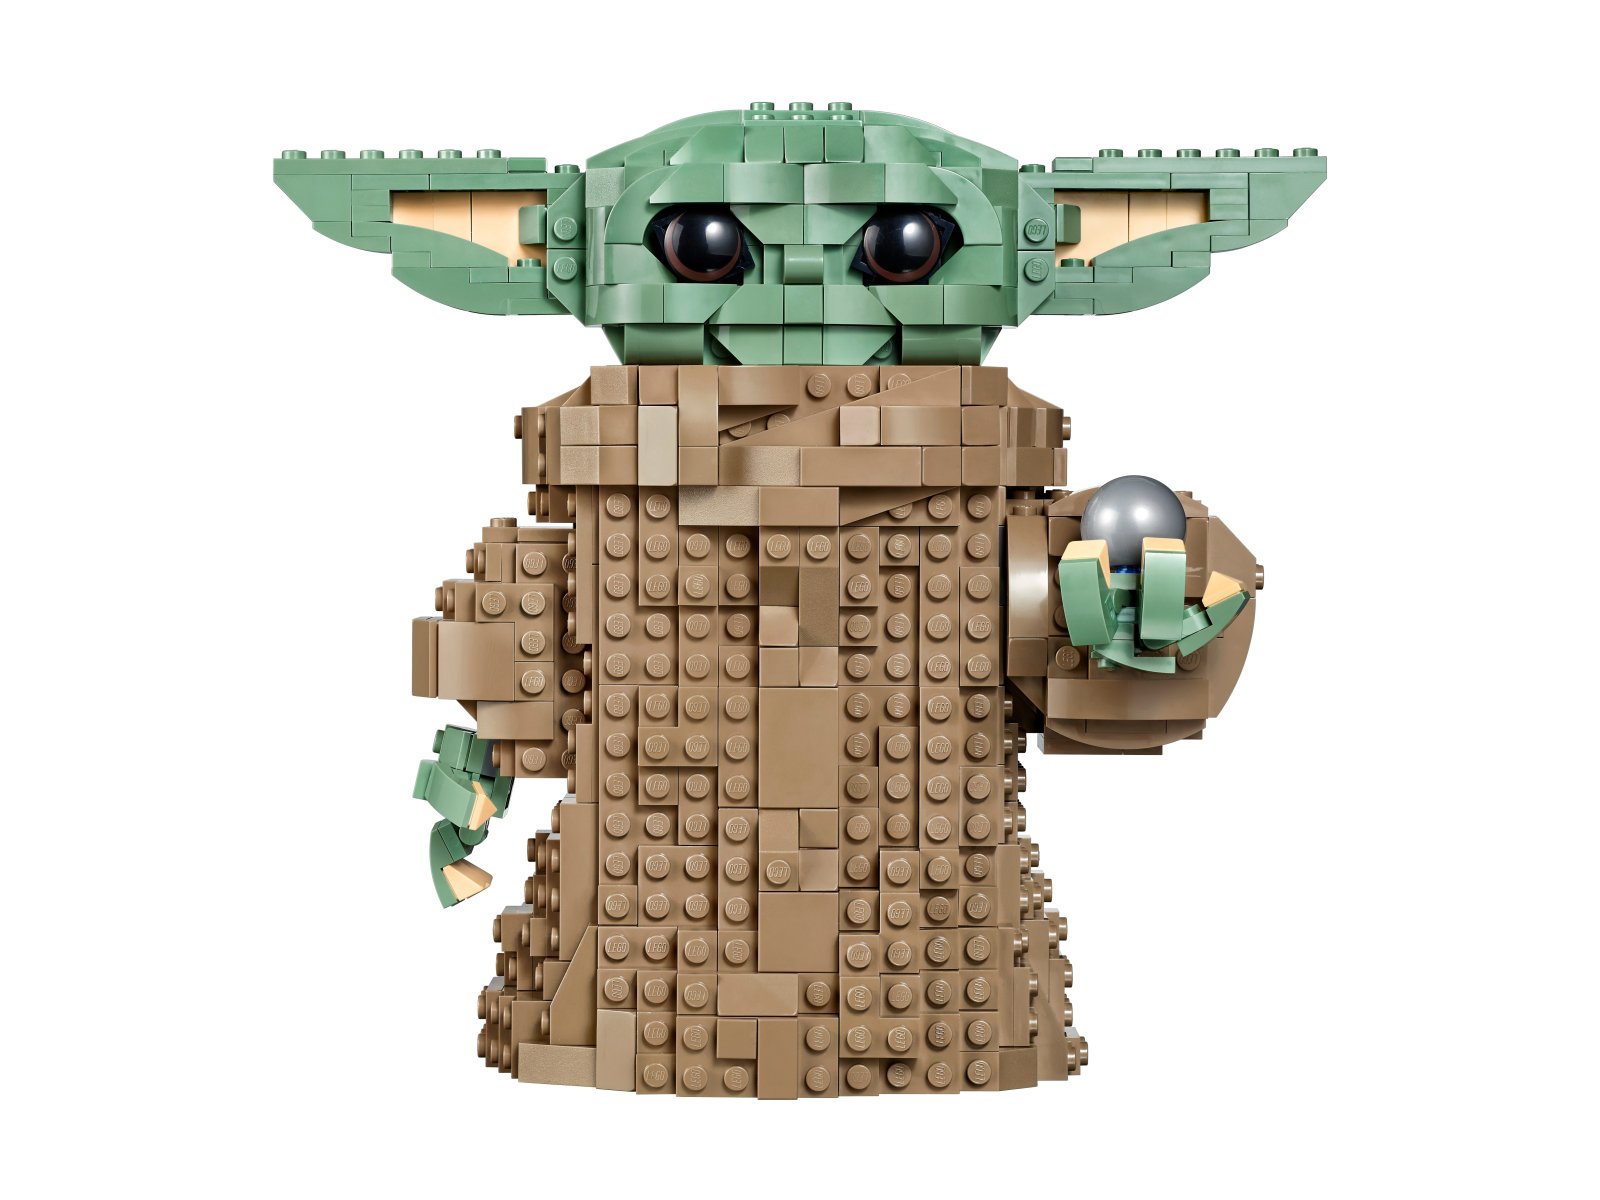 LEGO Star Wars Dziecko (Baby Yoda) 75318